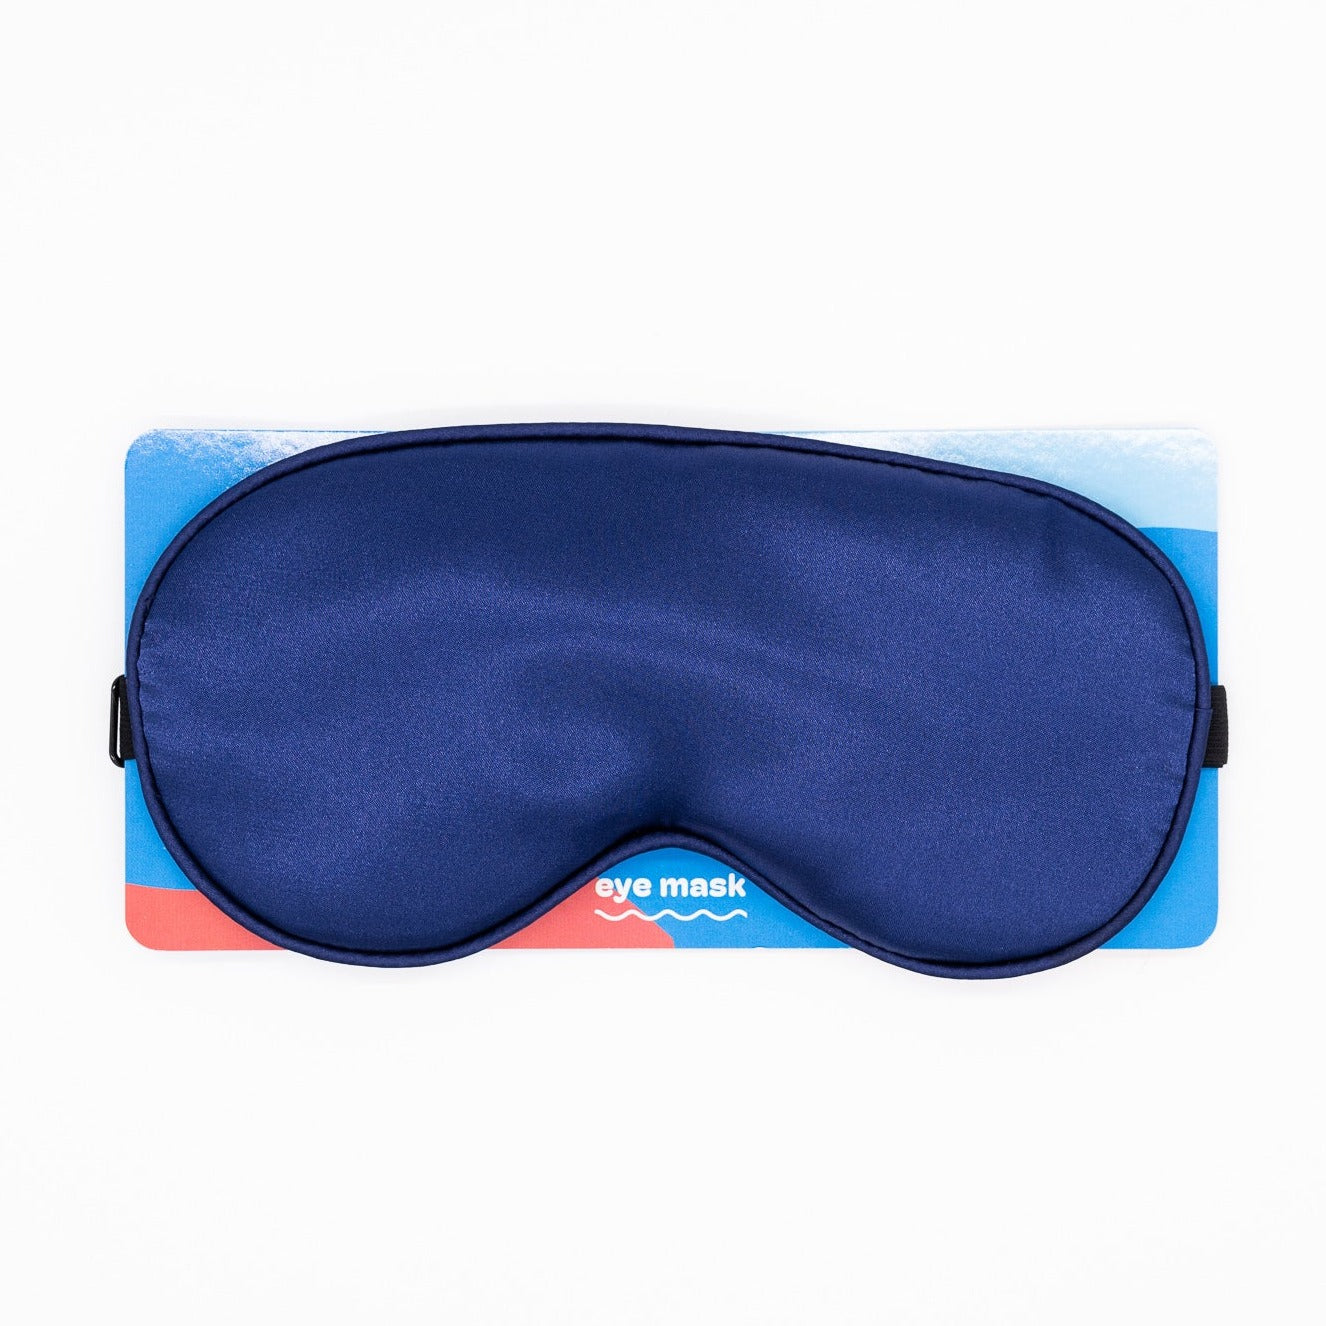 Sleep Eye Mask & Blindfold